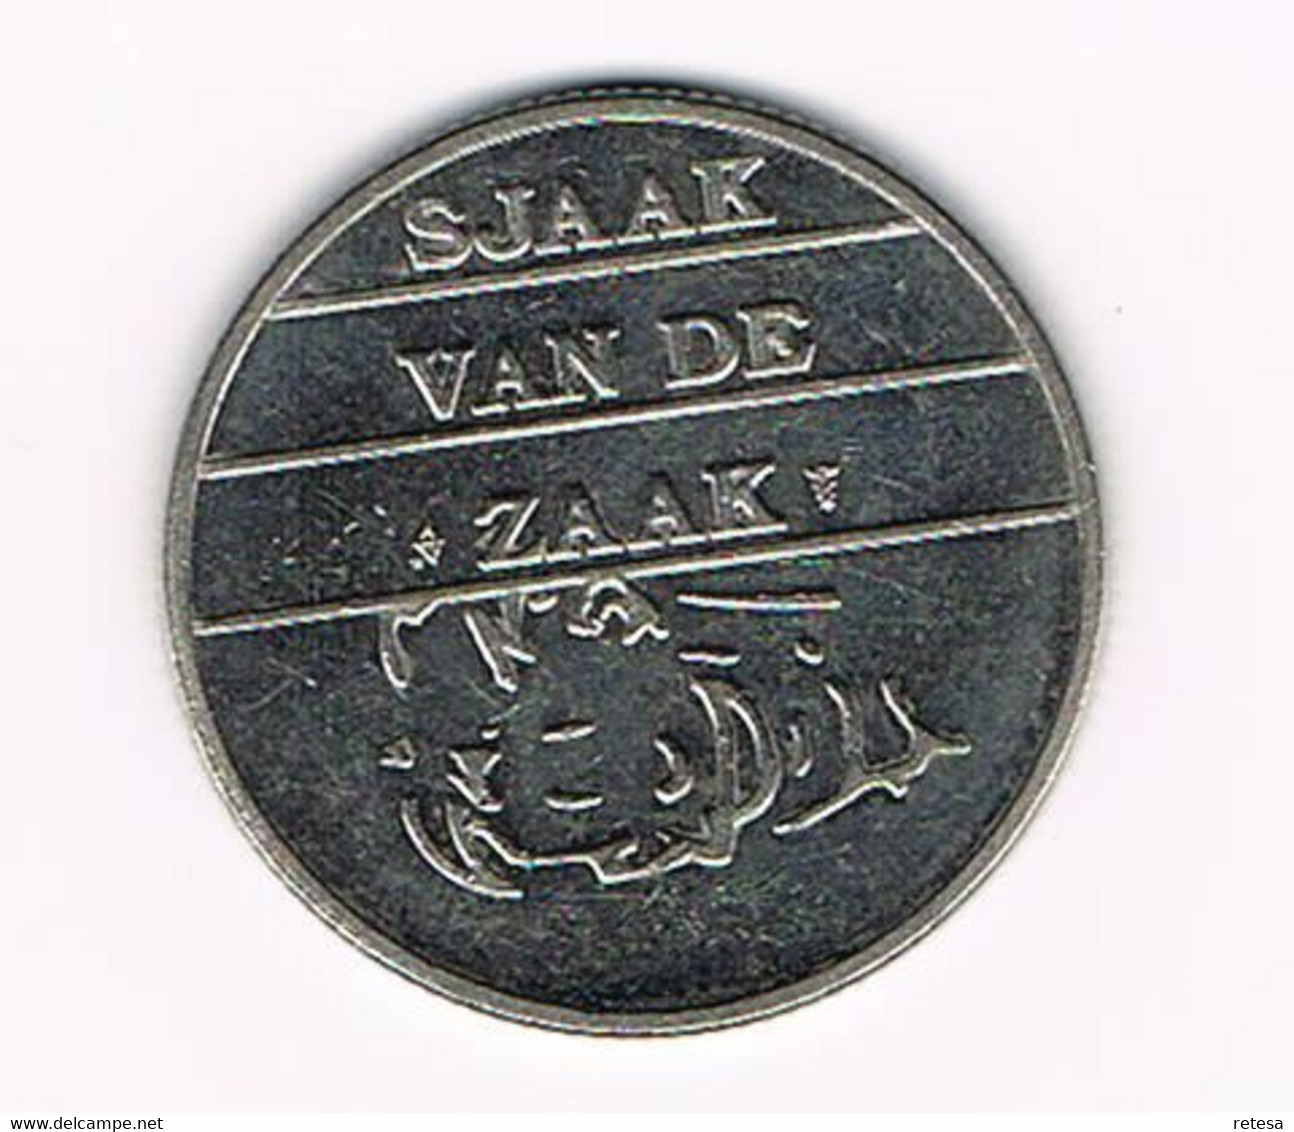 # NEDERLAND  SJAAKIE KONING DER HORICA 2005 MISE EN PLACE - SJAAK VAN DE ZAAK - Elongated Coins